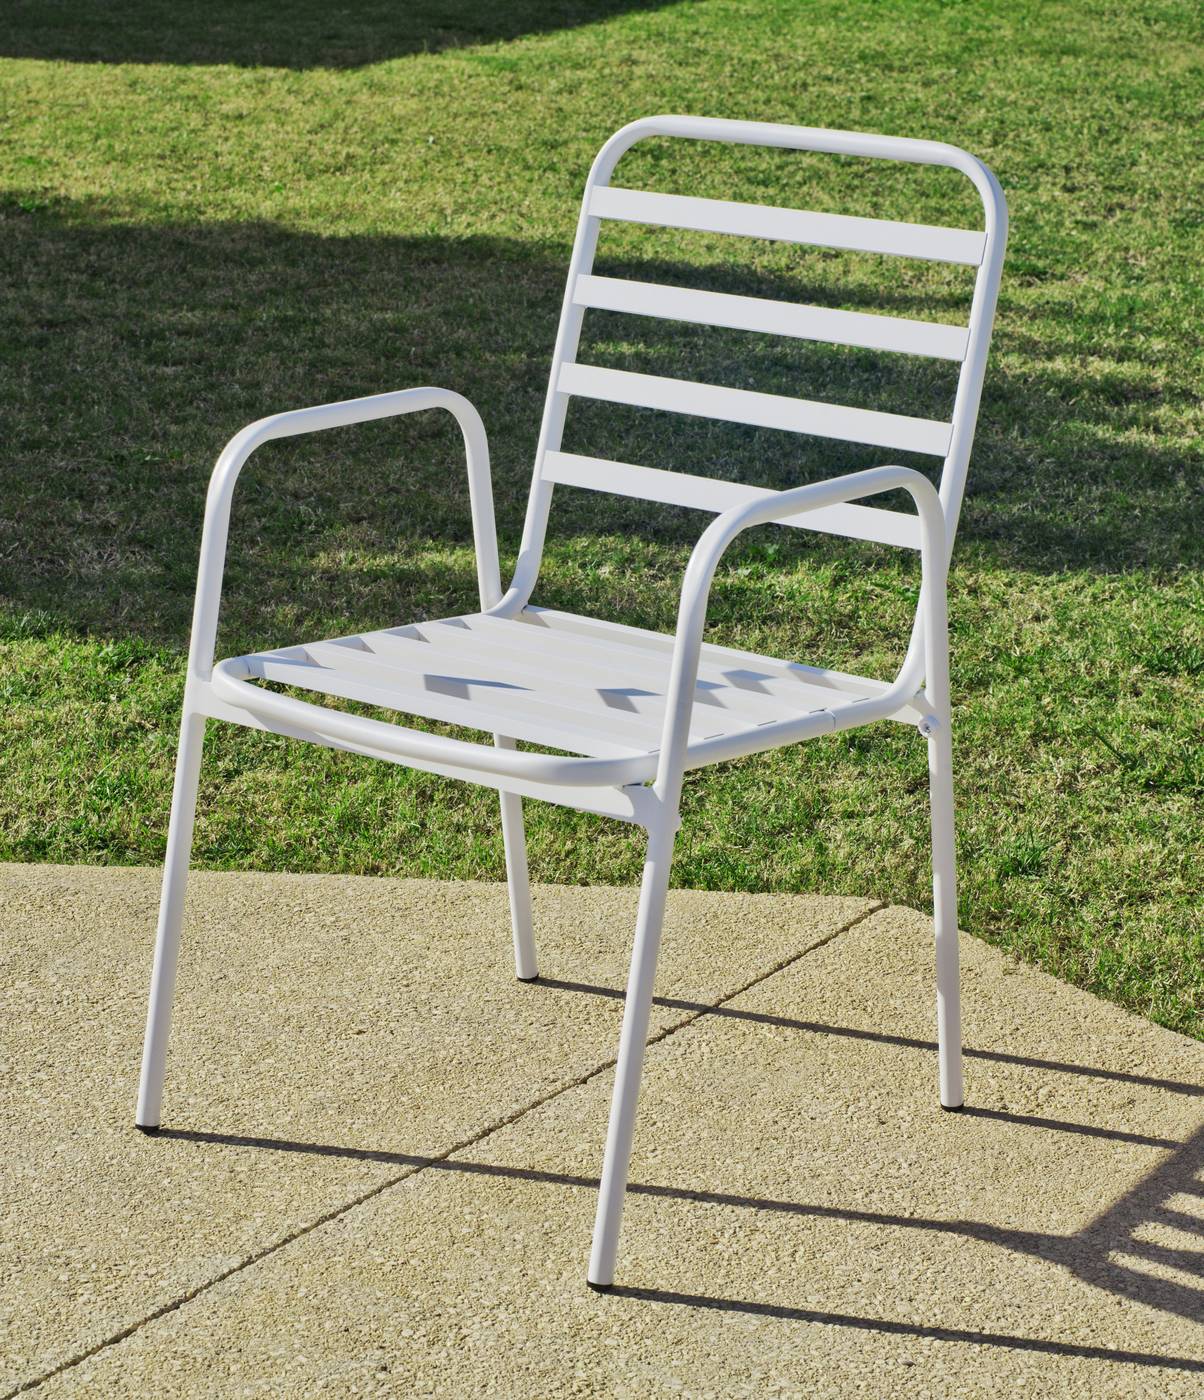 Set Aluminio Melea-Maxim 65-2 - Conjunto apilable de aluminio luxe: mesa cuadrada de 65 cm. + 2 sillones. Disponible en color blanco y color antracita.